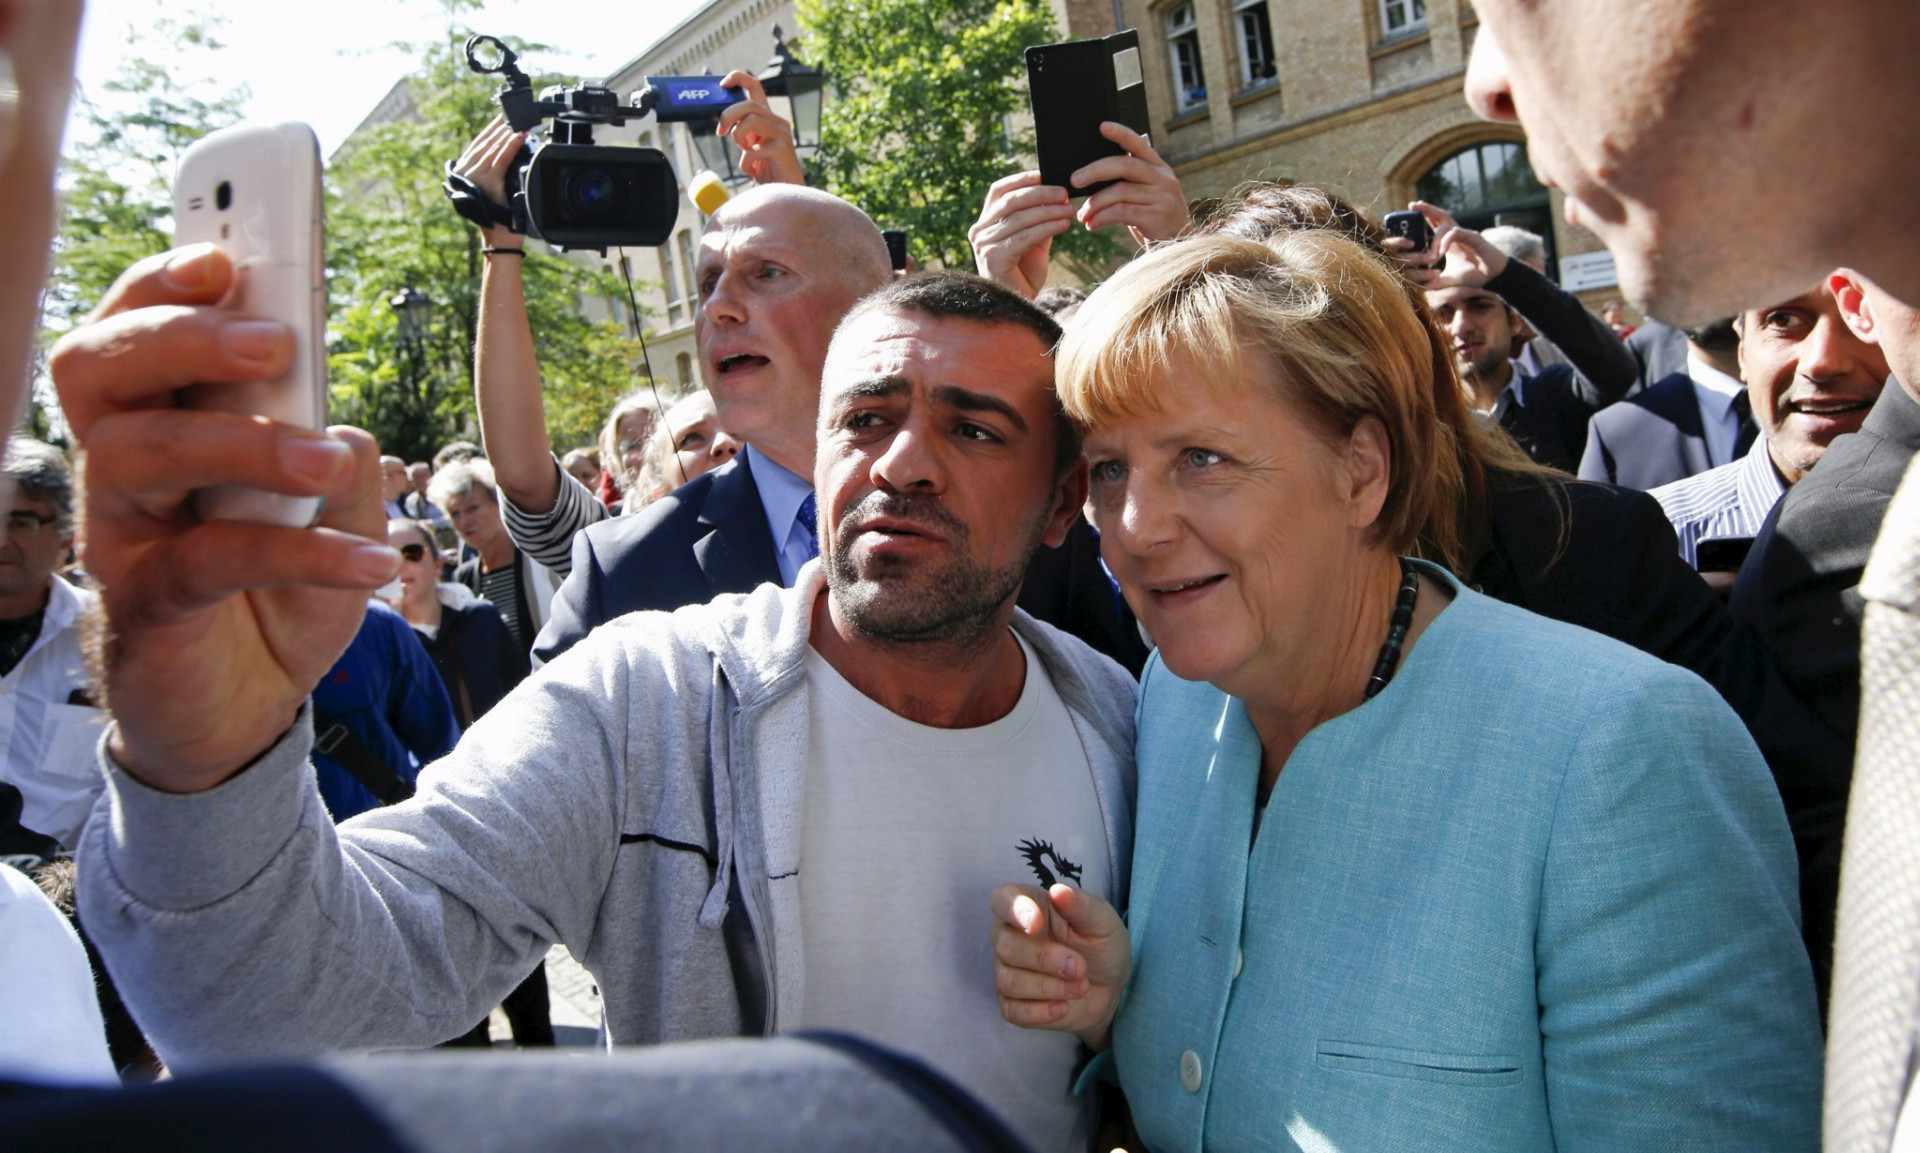 Migrant sa fotí s Merkelovou